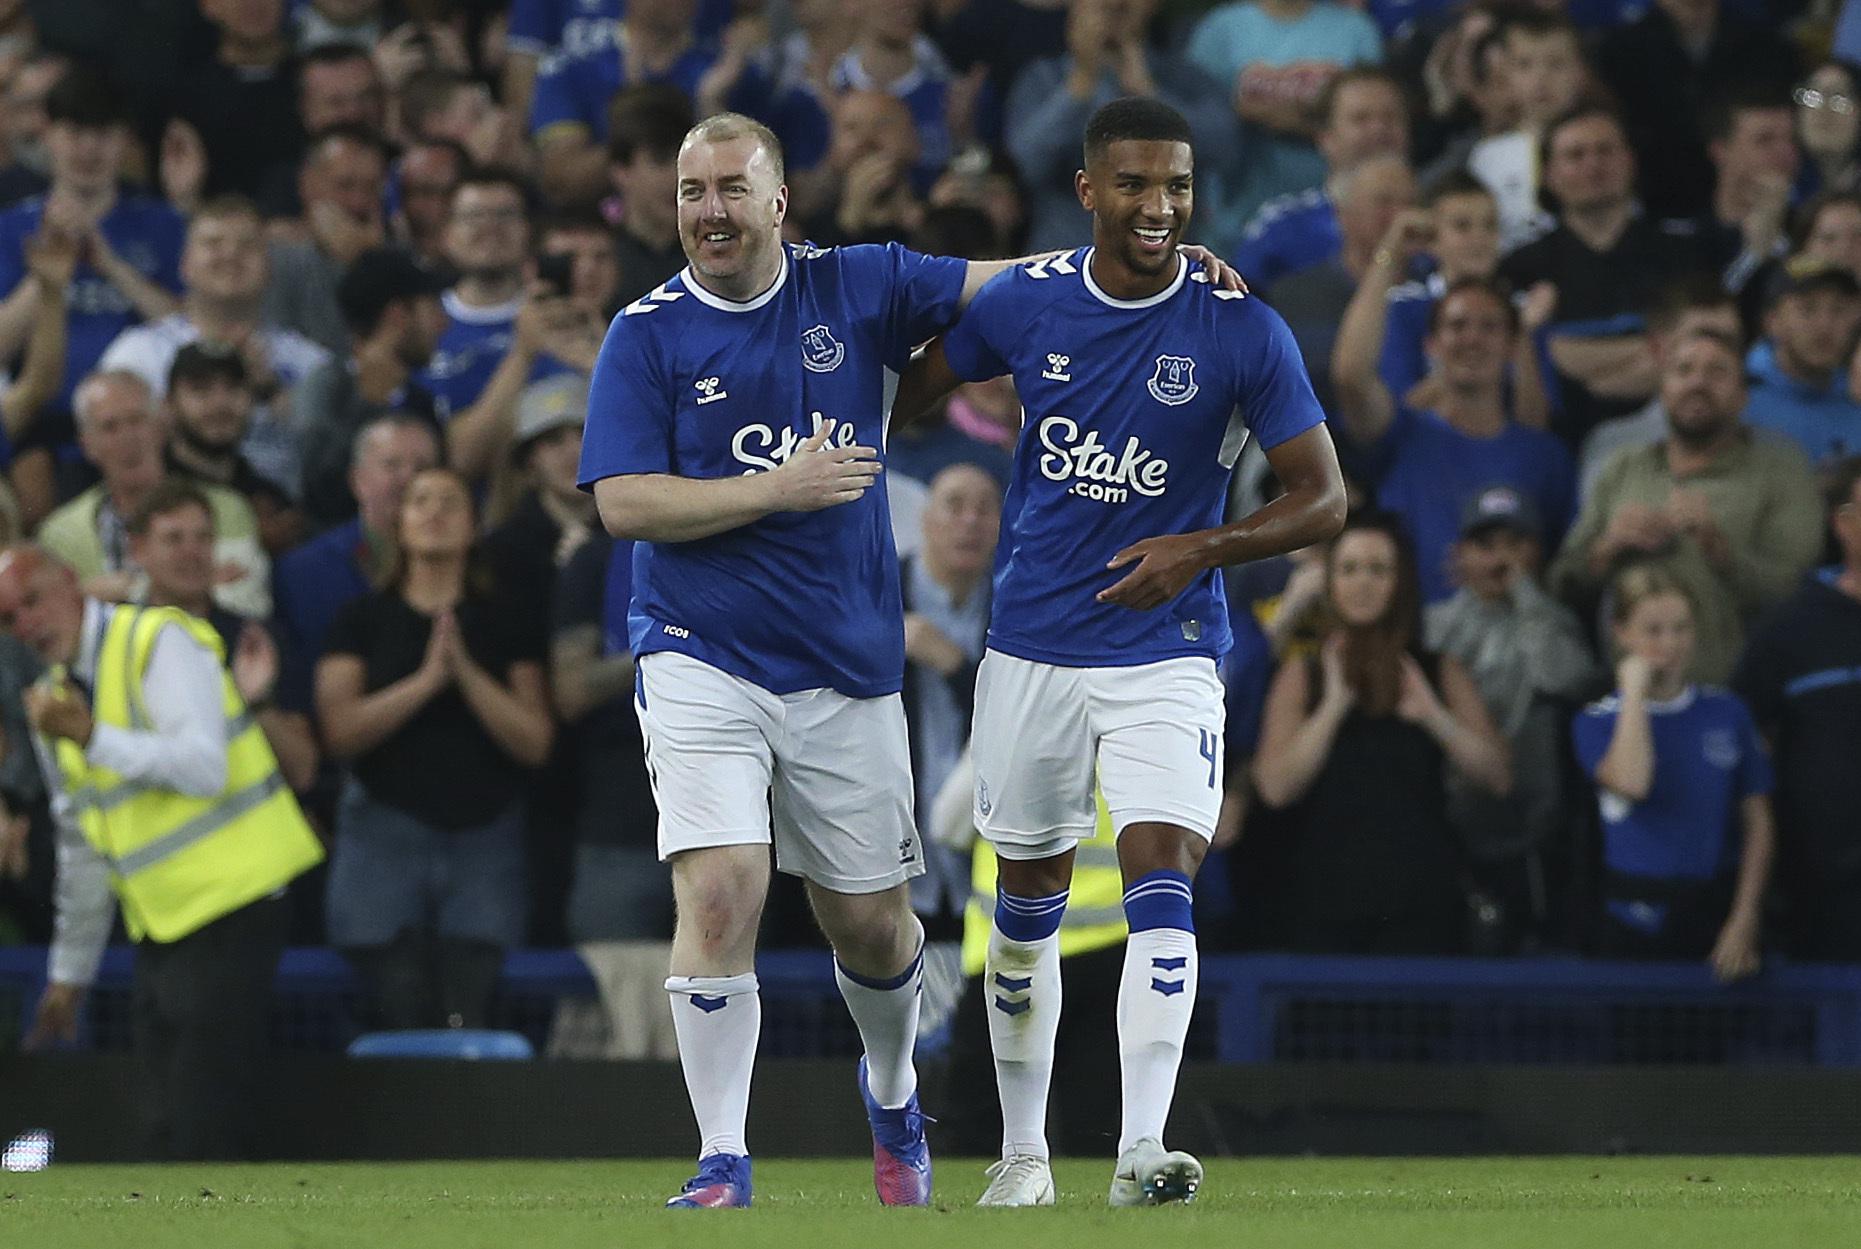 Kibic Evertonu pomagający uciekinierom strzela bramkę przeciwko Dynamo Kijów